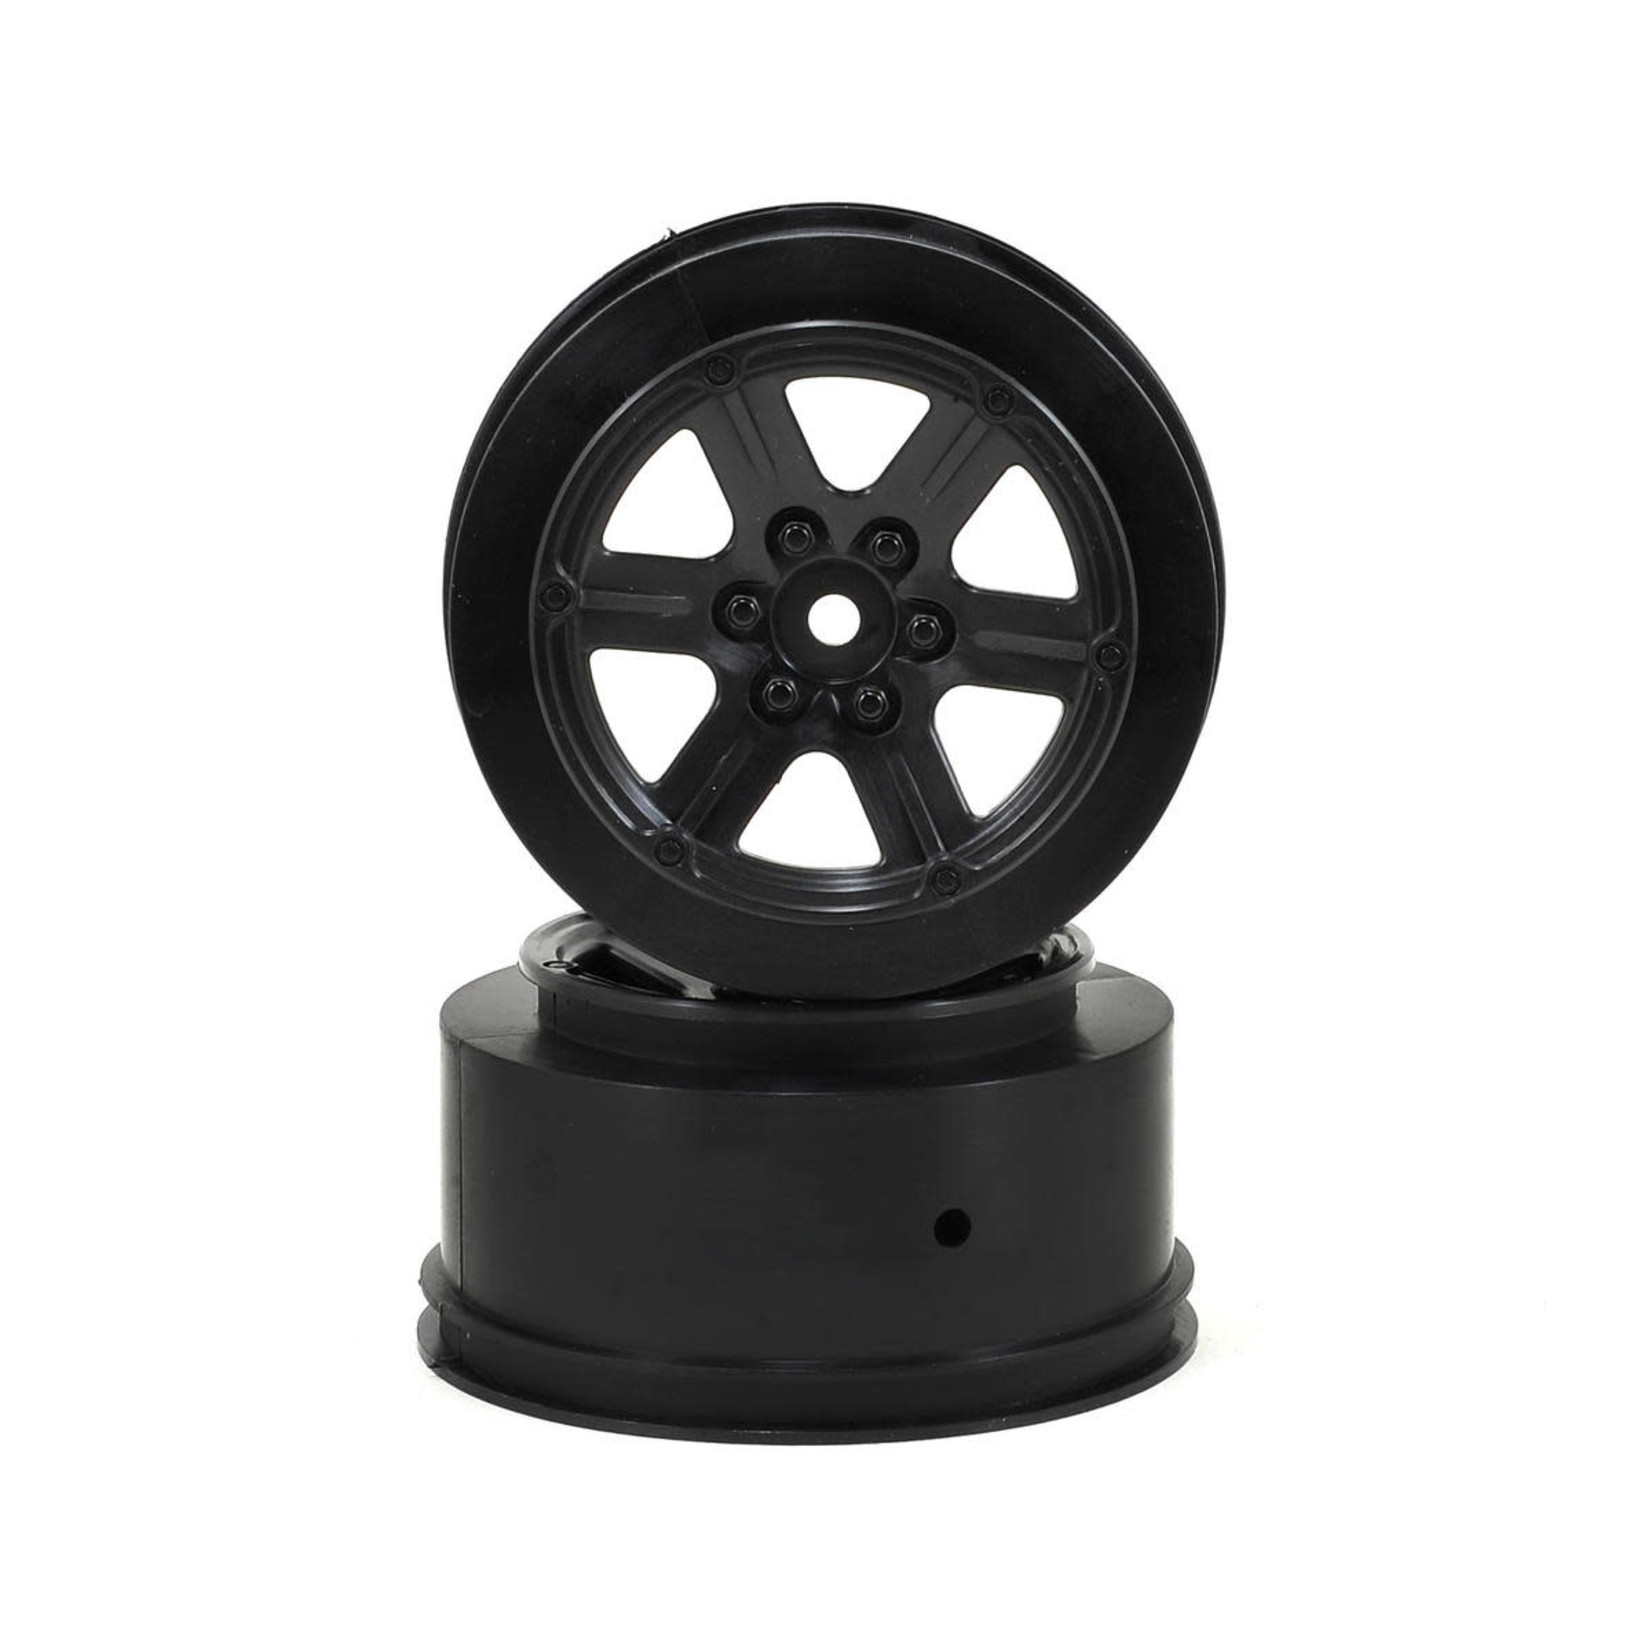 Schumacher Schumacher 12mm Hex 6-Spoke Short Course Wheels w/3mm Offset (Black) (2) #U4733